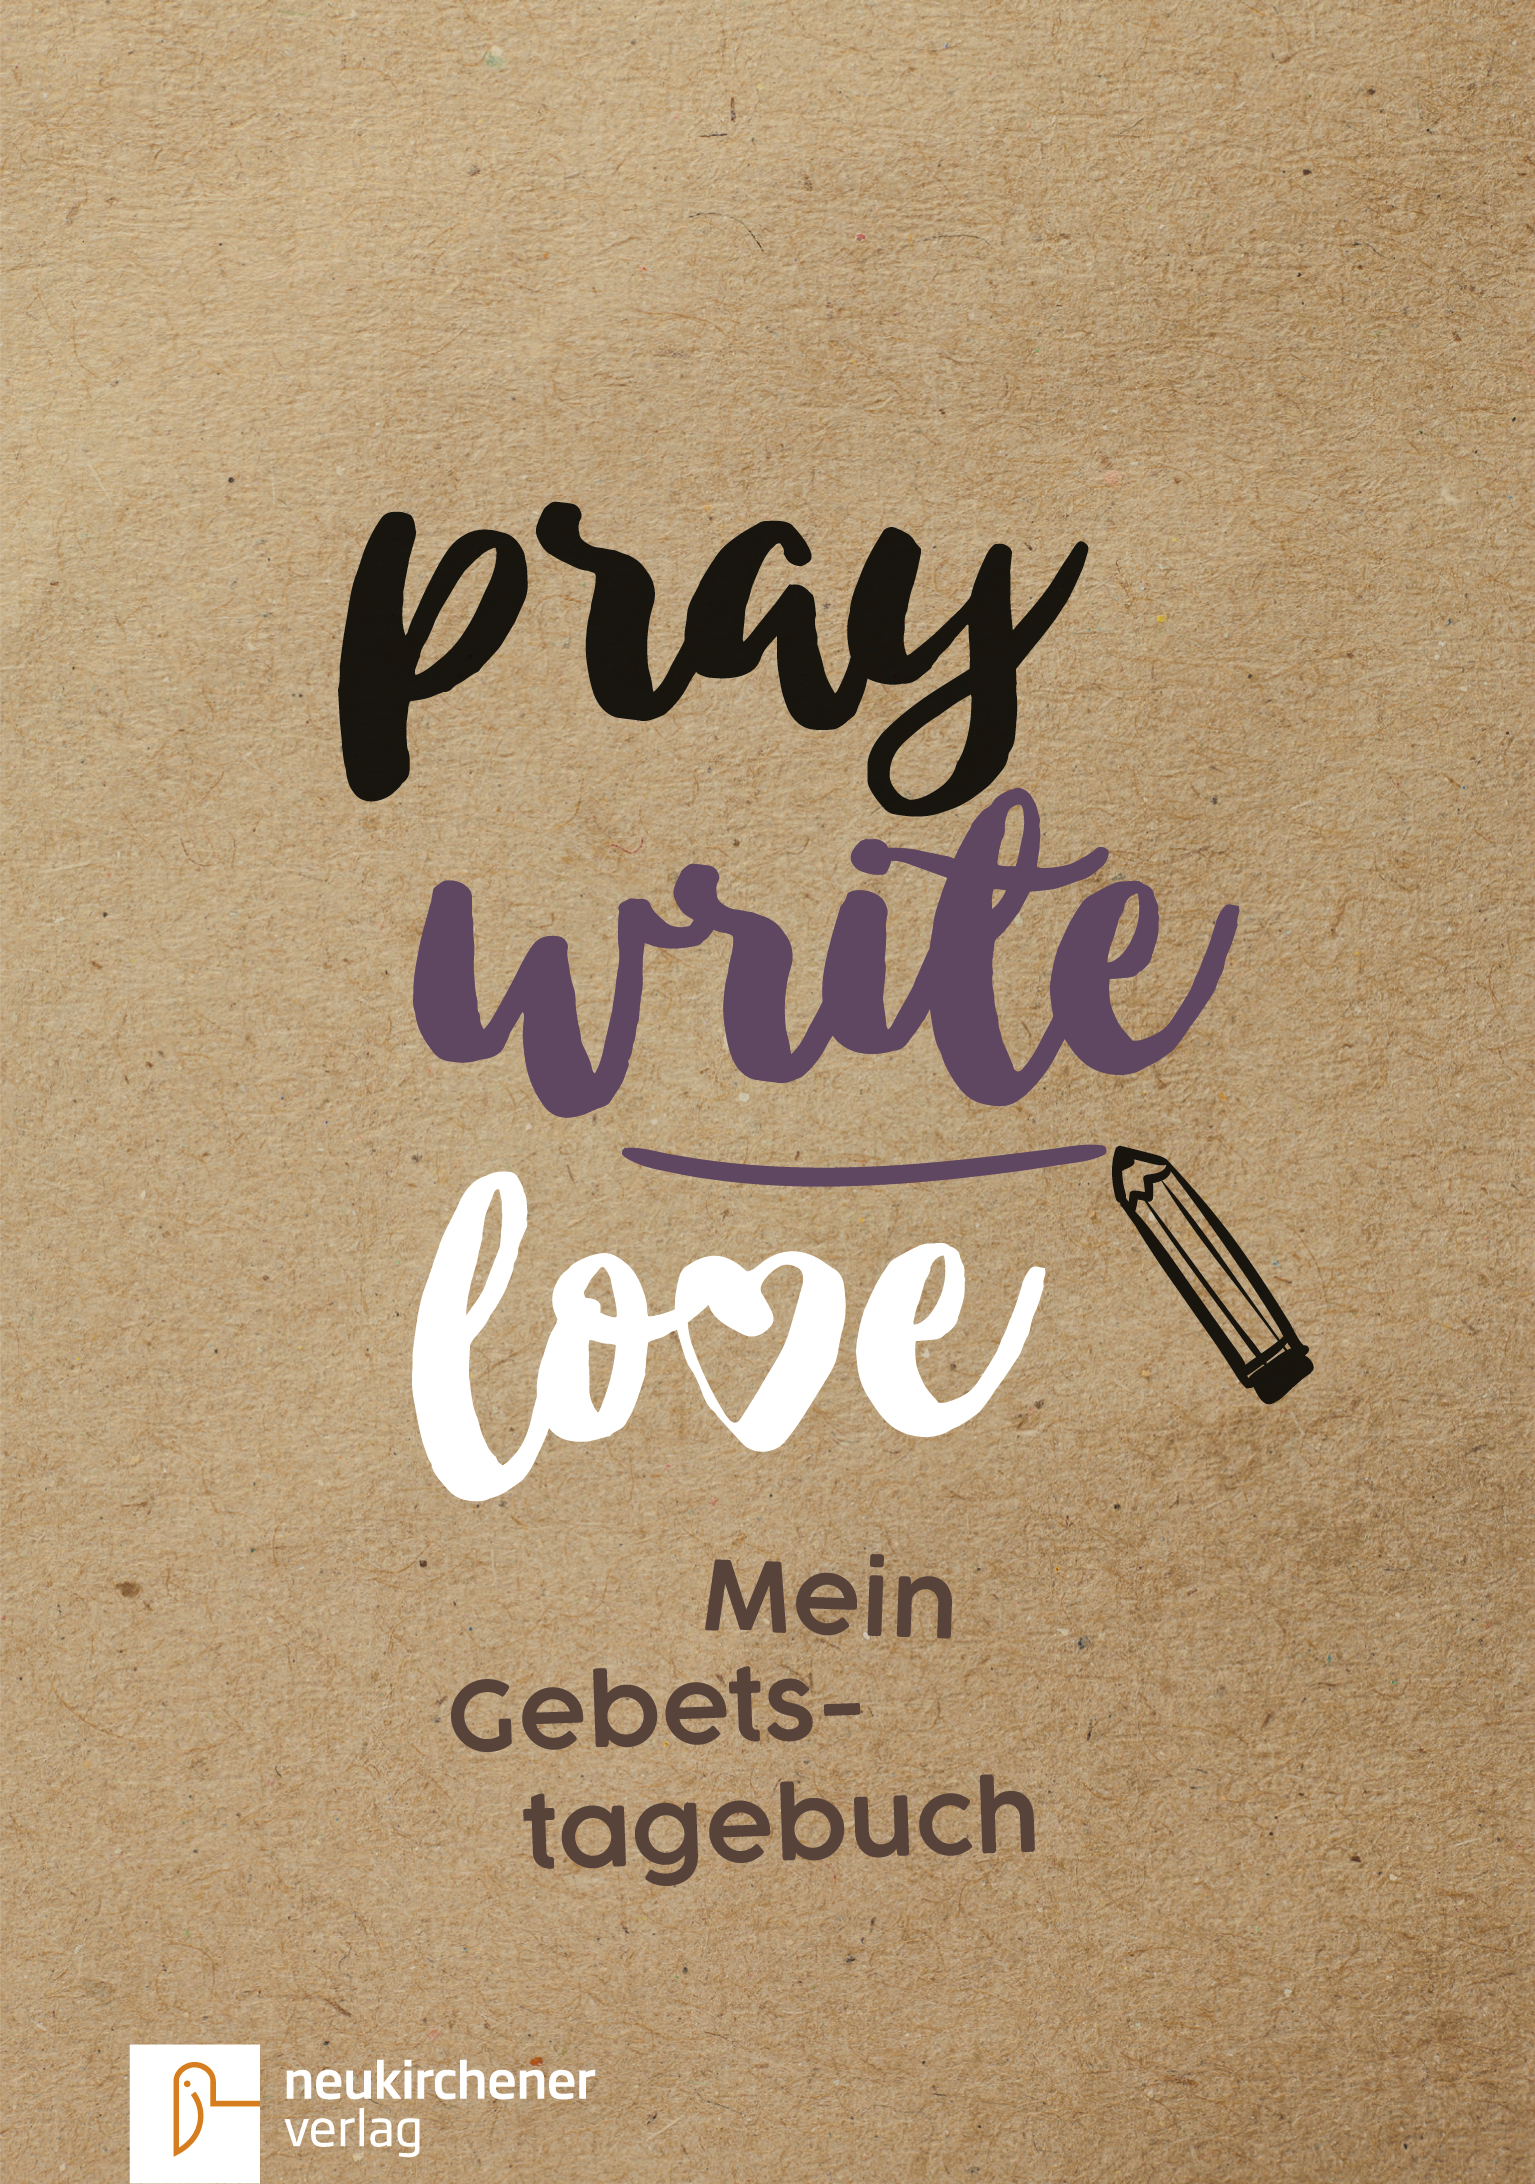 Pray Write Love - Mein Gebetstagebuch